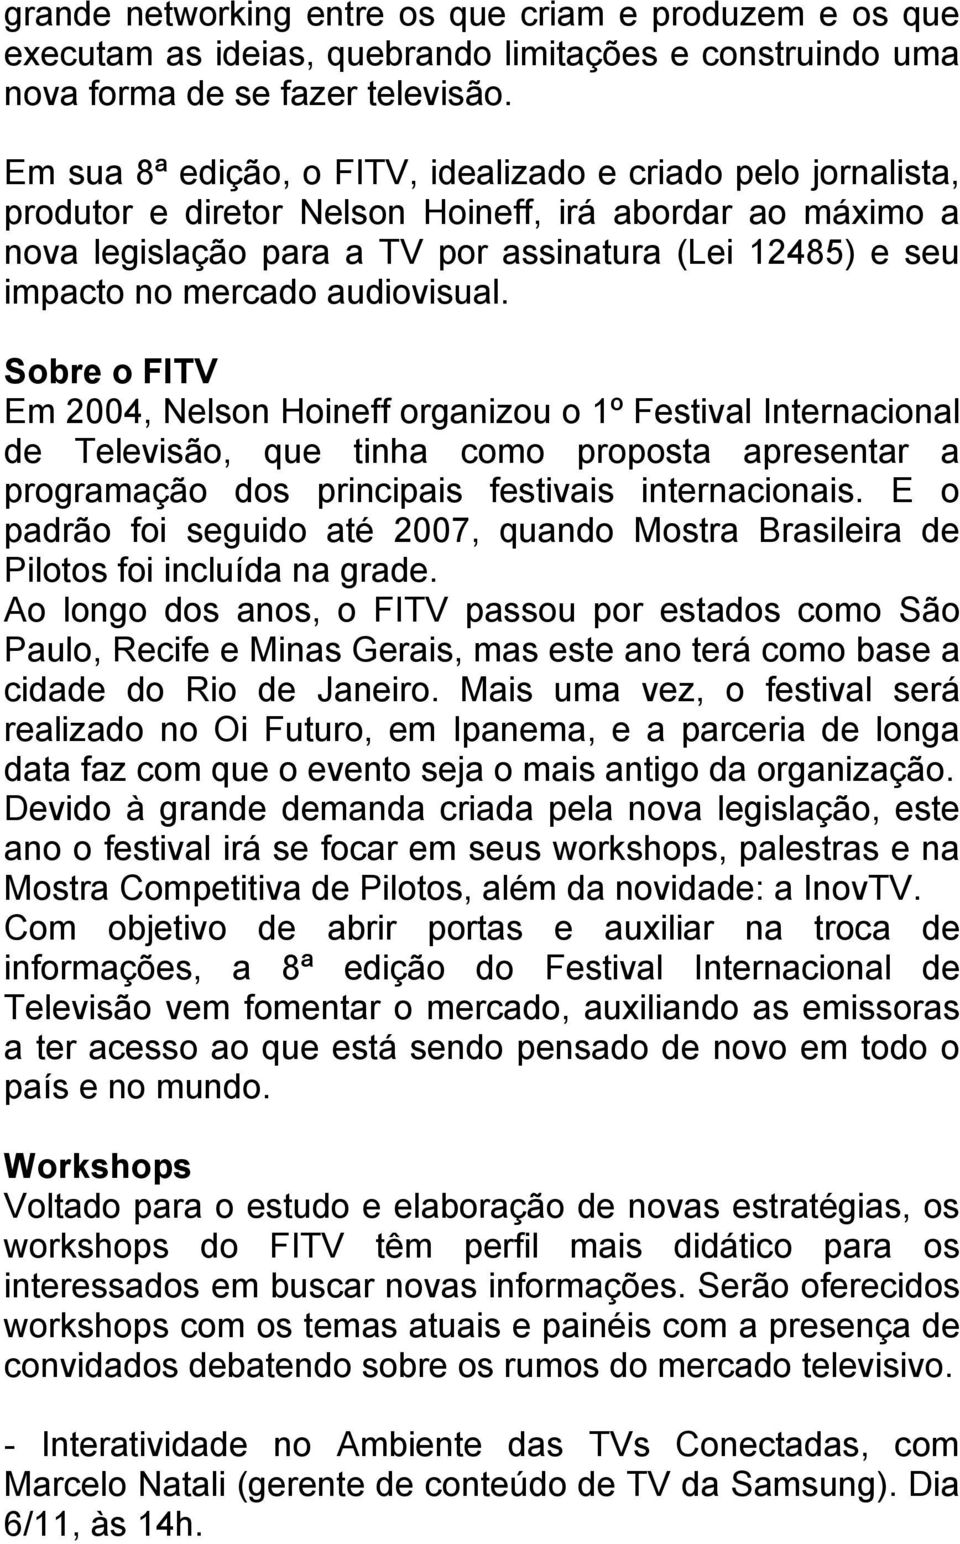 audiovisual. Sobre o FITV Em 2004, Nelson Hoineff organizou o 1º Festival Internacional de Televisão, que tinha como proposta apresentar a programação dos principais festivais internacionais.